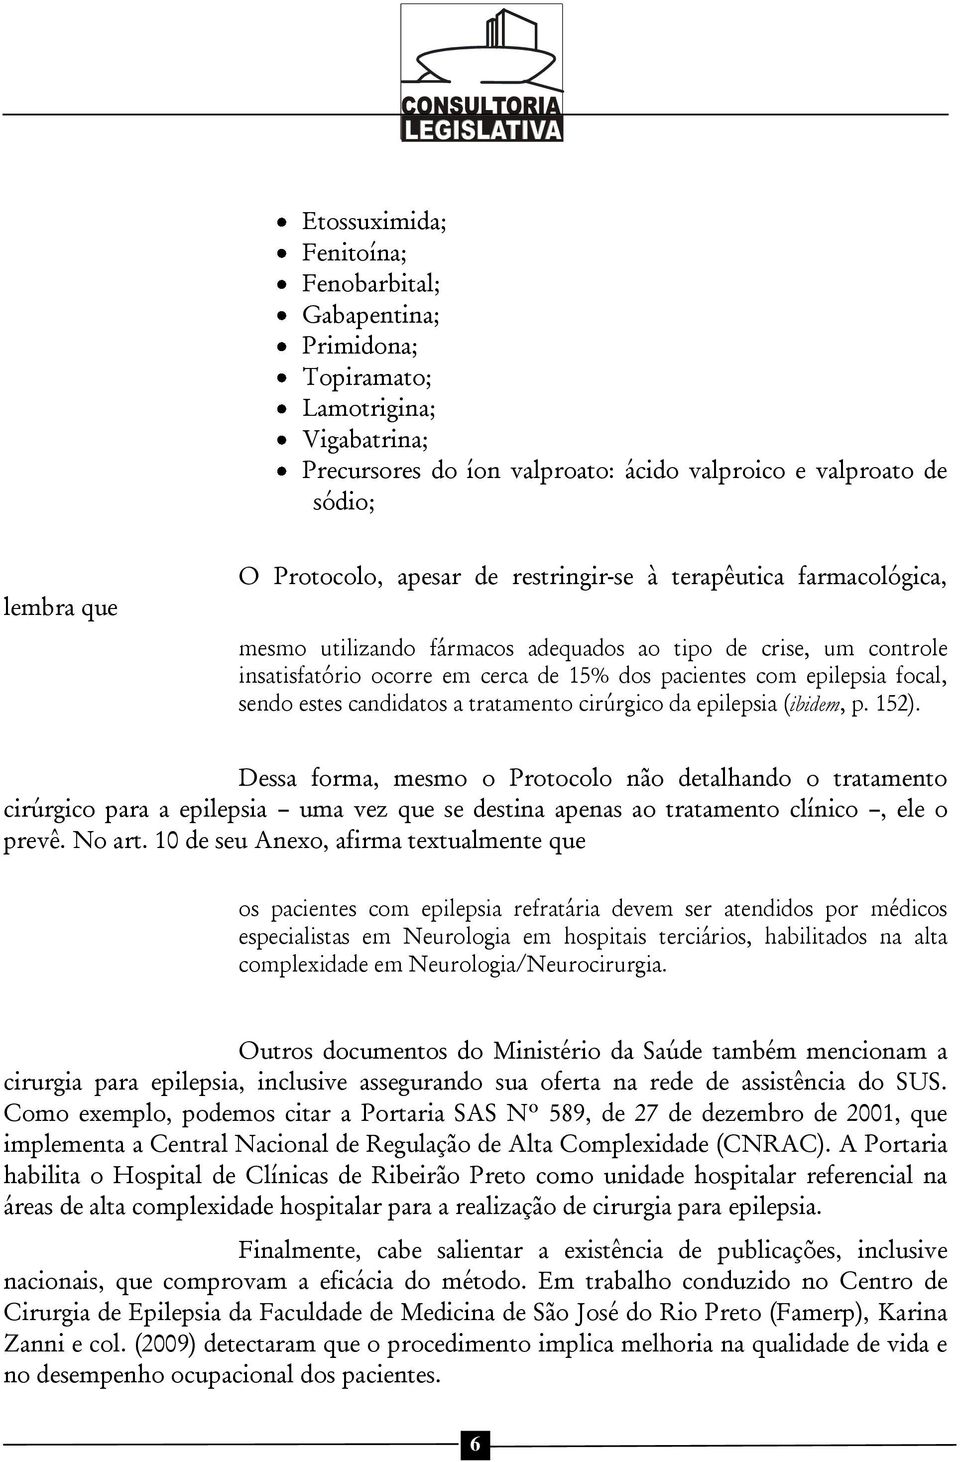 candidatos a tratamento cirúrgico da epilepsia (ibidem, p. 152).